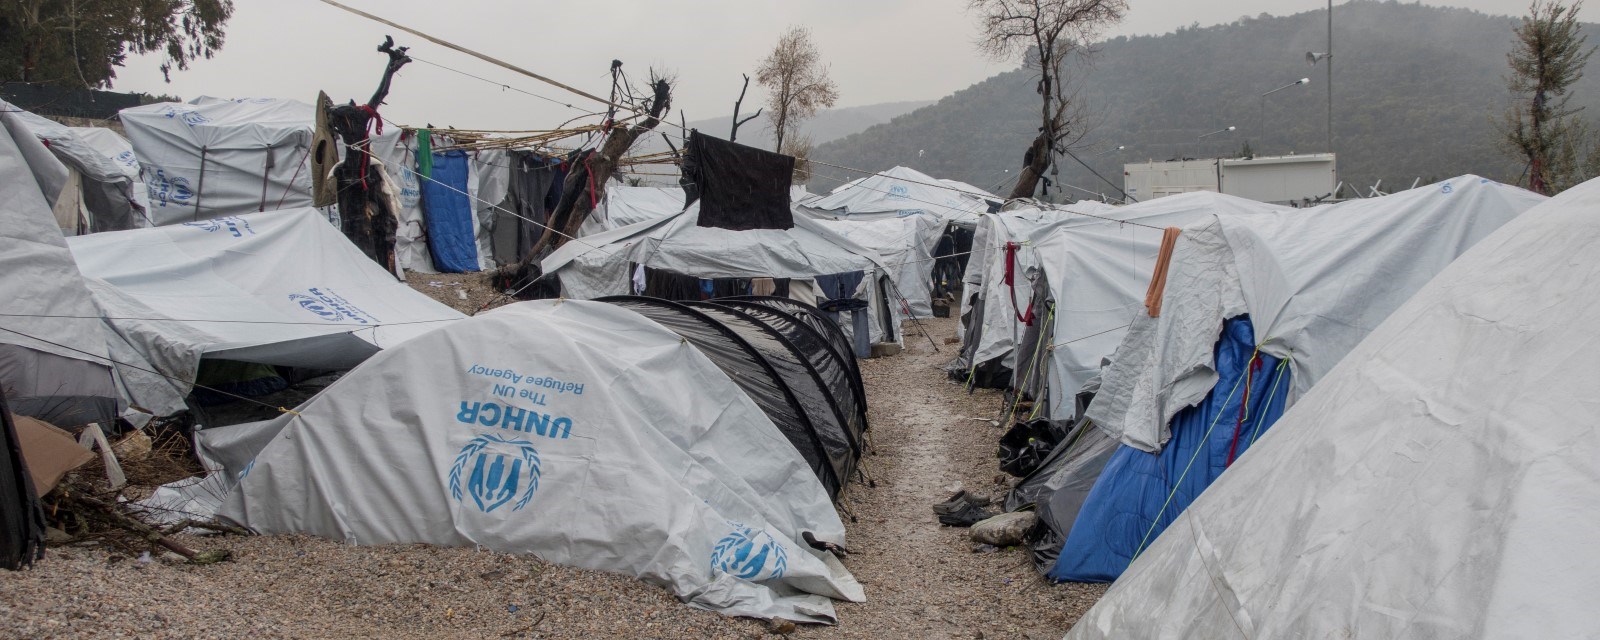 Provisoriske telt satt sammen av presenninger står tett i tett i flyktningleiren. Det regner 